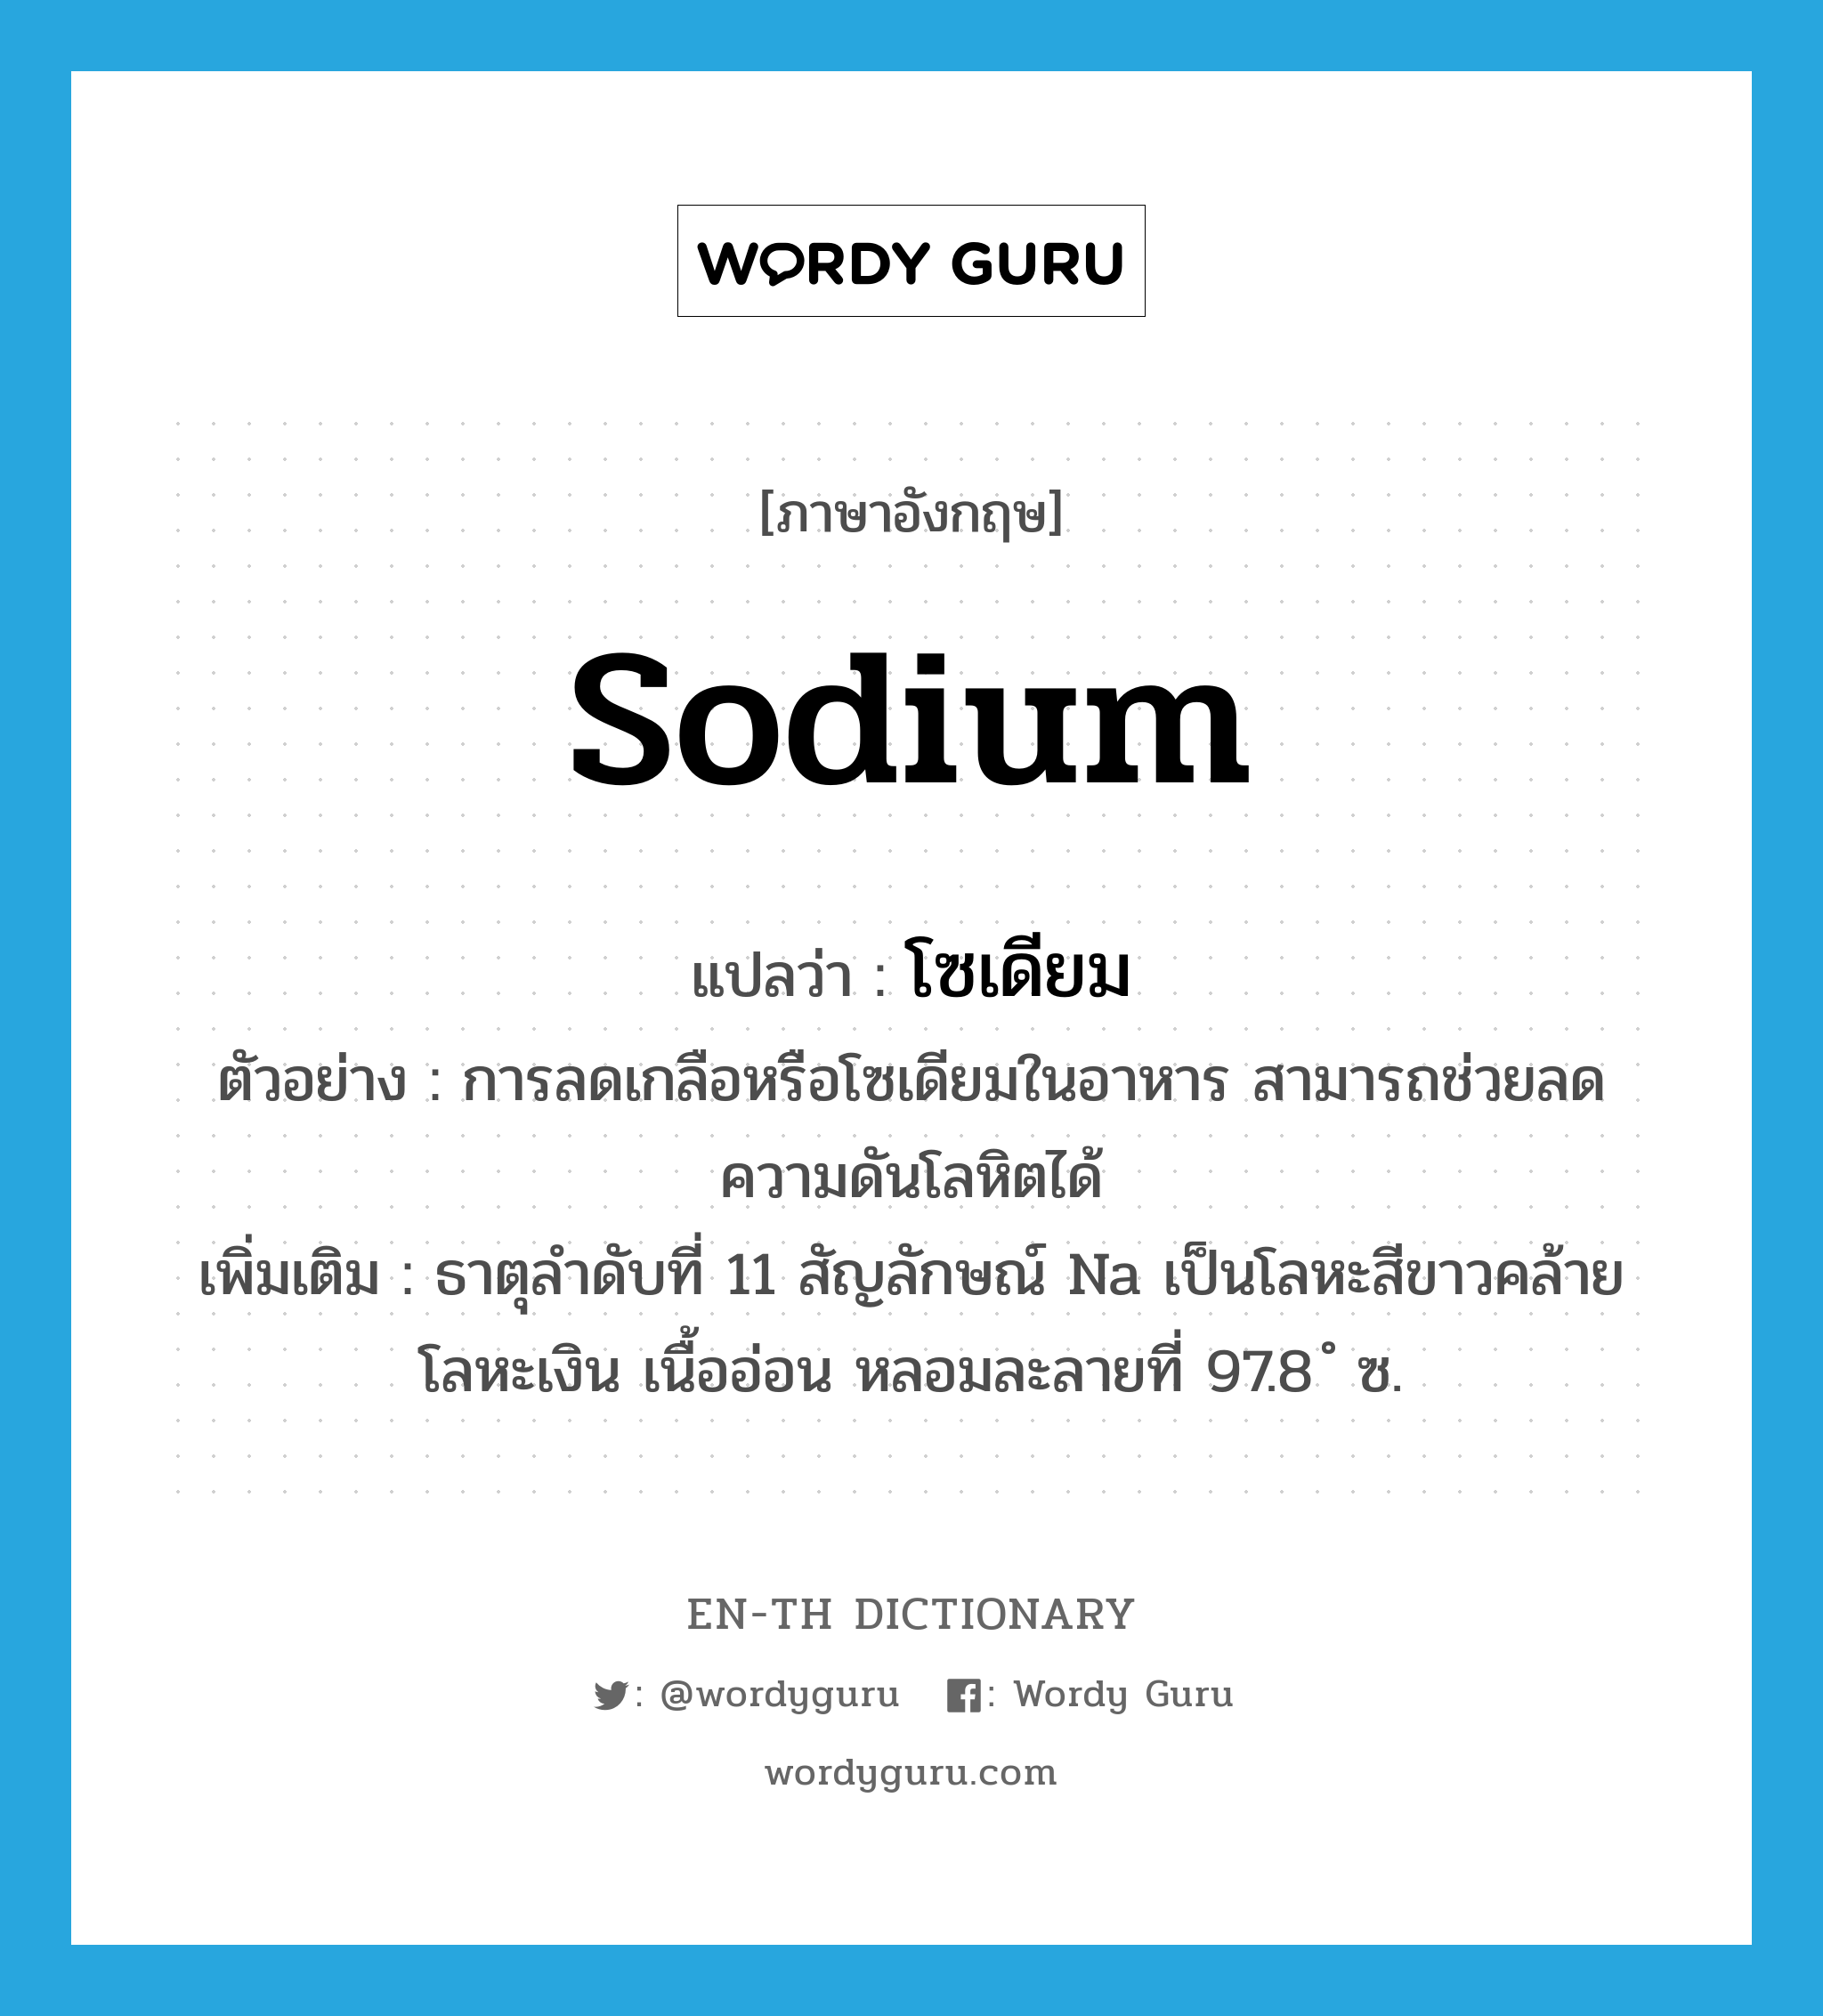 sodium แปลว่า?, คำศัพท์ภาษาอังกฤษ sodium แปลว่า โซเดียม ประเภท N ตัวอย่าง การลดเกลือหรือโซเดียมในอาหาร สามารถช่วยลดความดันโลหิตได้ เพิ่มเติม ธาตุลำดับที่ 11 สัญลักษณ์ Na เป็นโลหะสีขาวคล้ายโลหะเงิน เนื้ออ่อน หลอมละลายที่ 97.8 ํ ซ. หมวด N